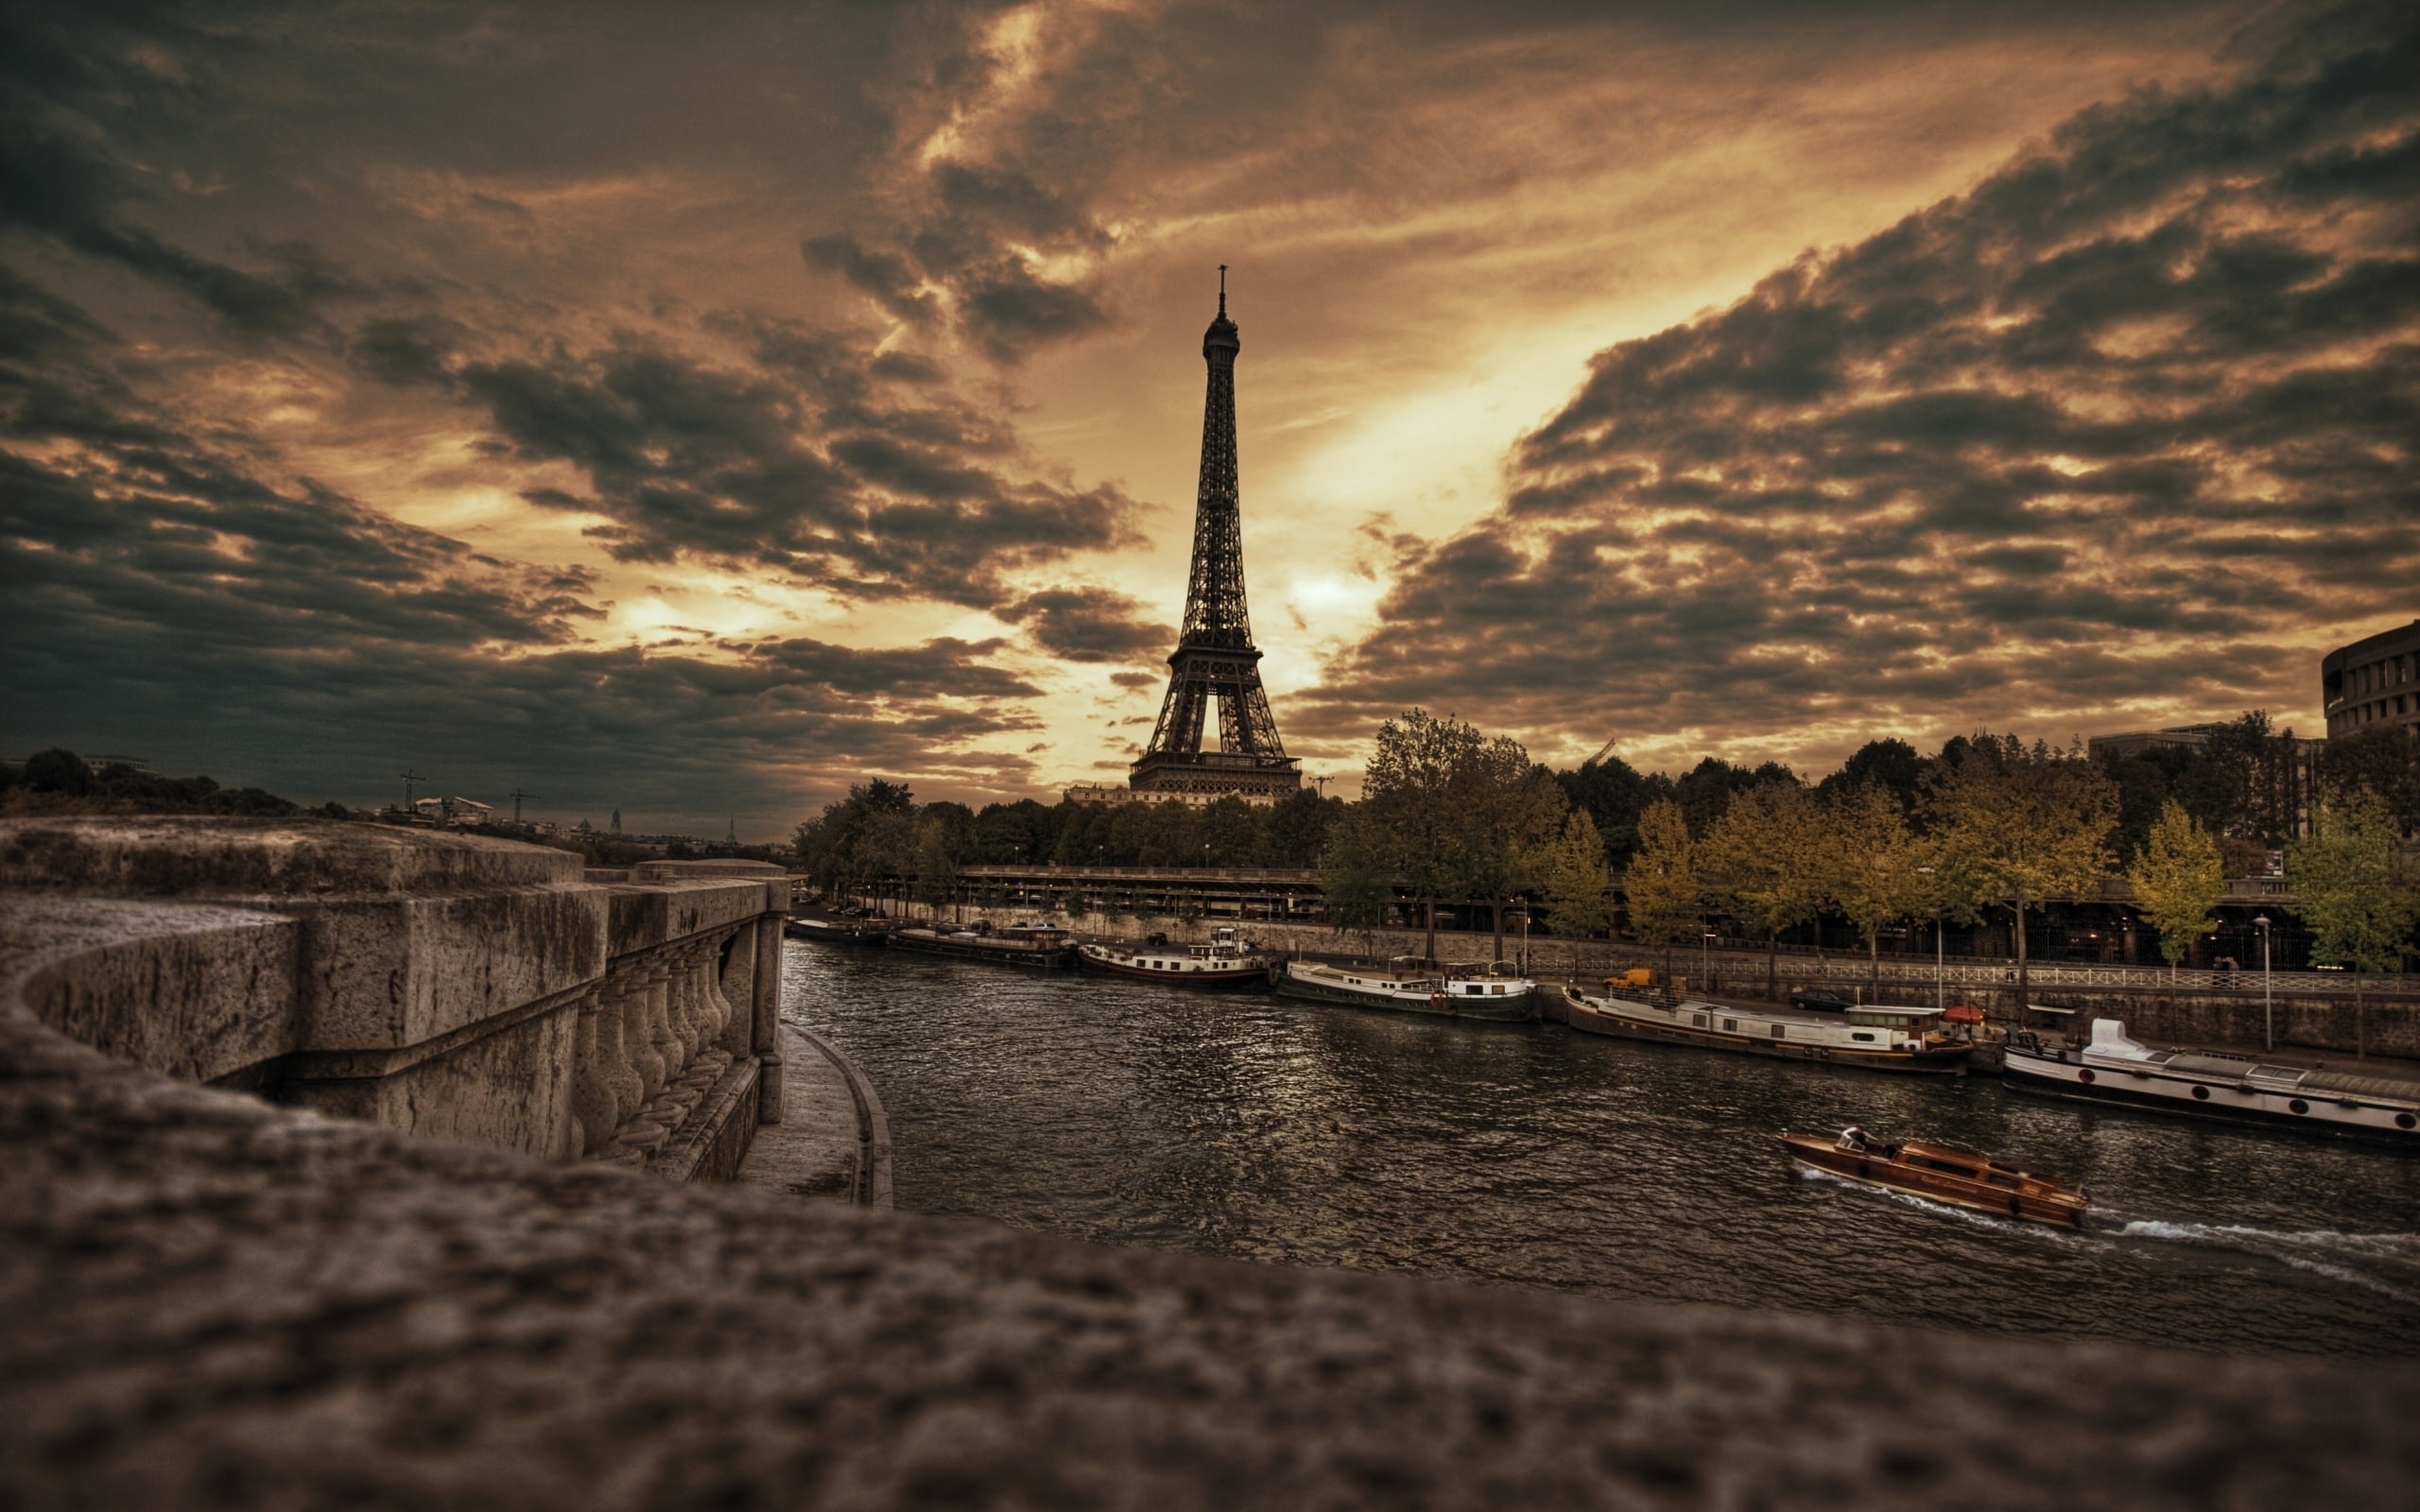 Eiffel Tower, Paris, promenade, hdr, famous Place, sunset, river